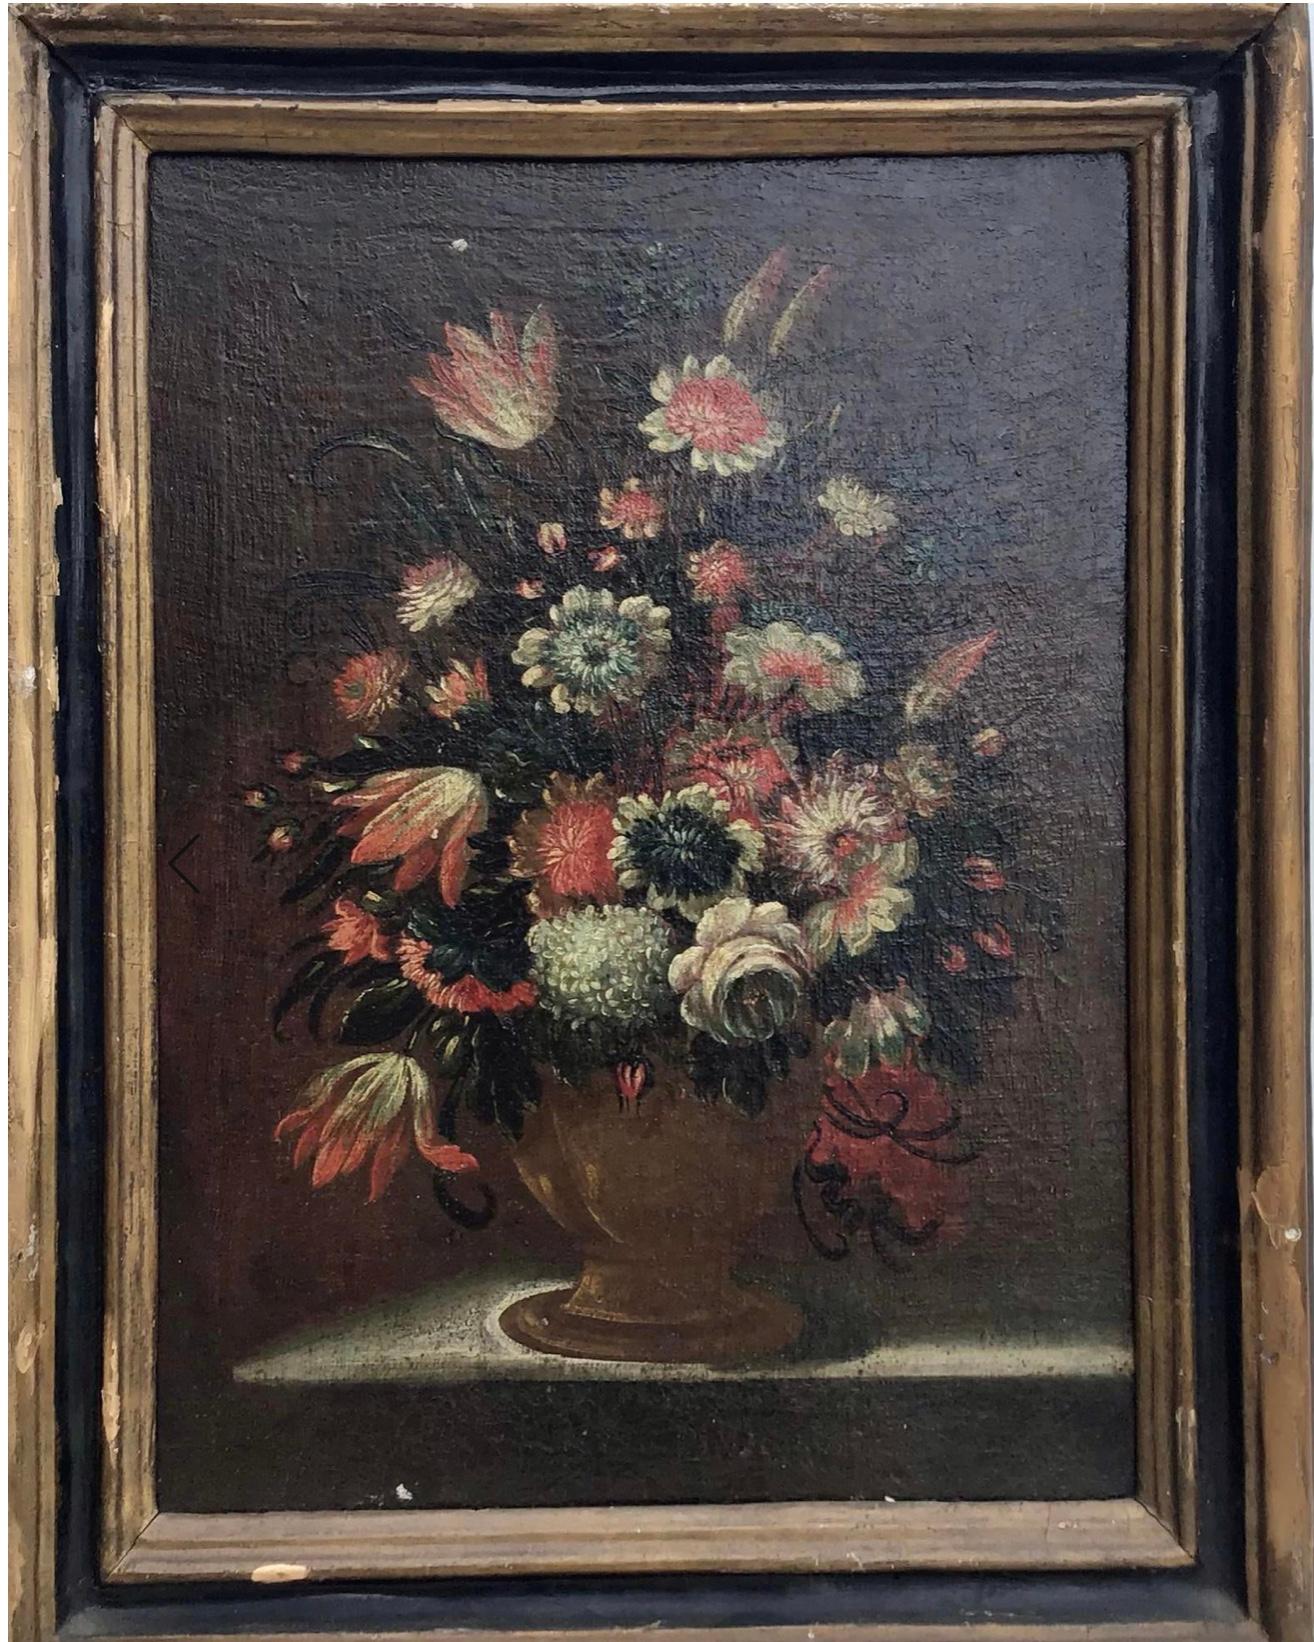 Belle nature morte italienne, peinture à l'huile sur toile ancienne d'une urne en laiton contenant un bouquet de fleurs assorties posé sur un rebord. 18ème ou 17ème siècle. Le tableau est en bon état d'ancienneté. Quelques taches de peinture et de